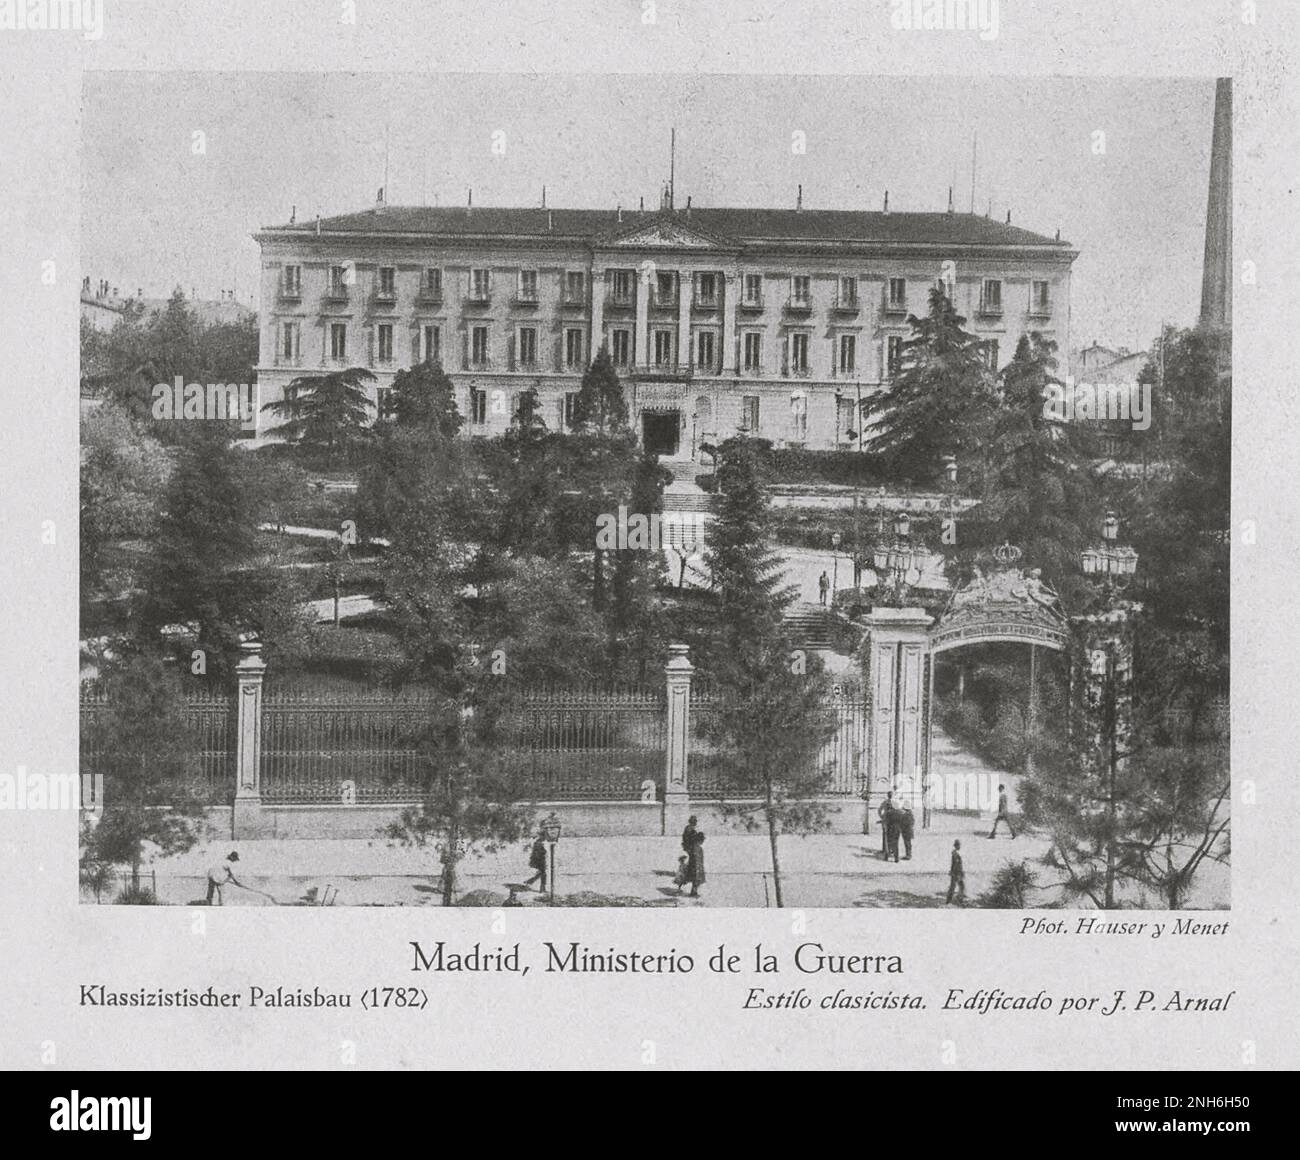 Architecture de la vieille Espagne. Photo d'époque du Ministerio de la Guerra, palais classicien de Madrid (1782) Banque D'Images